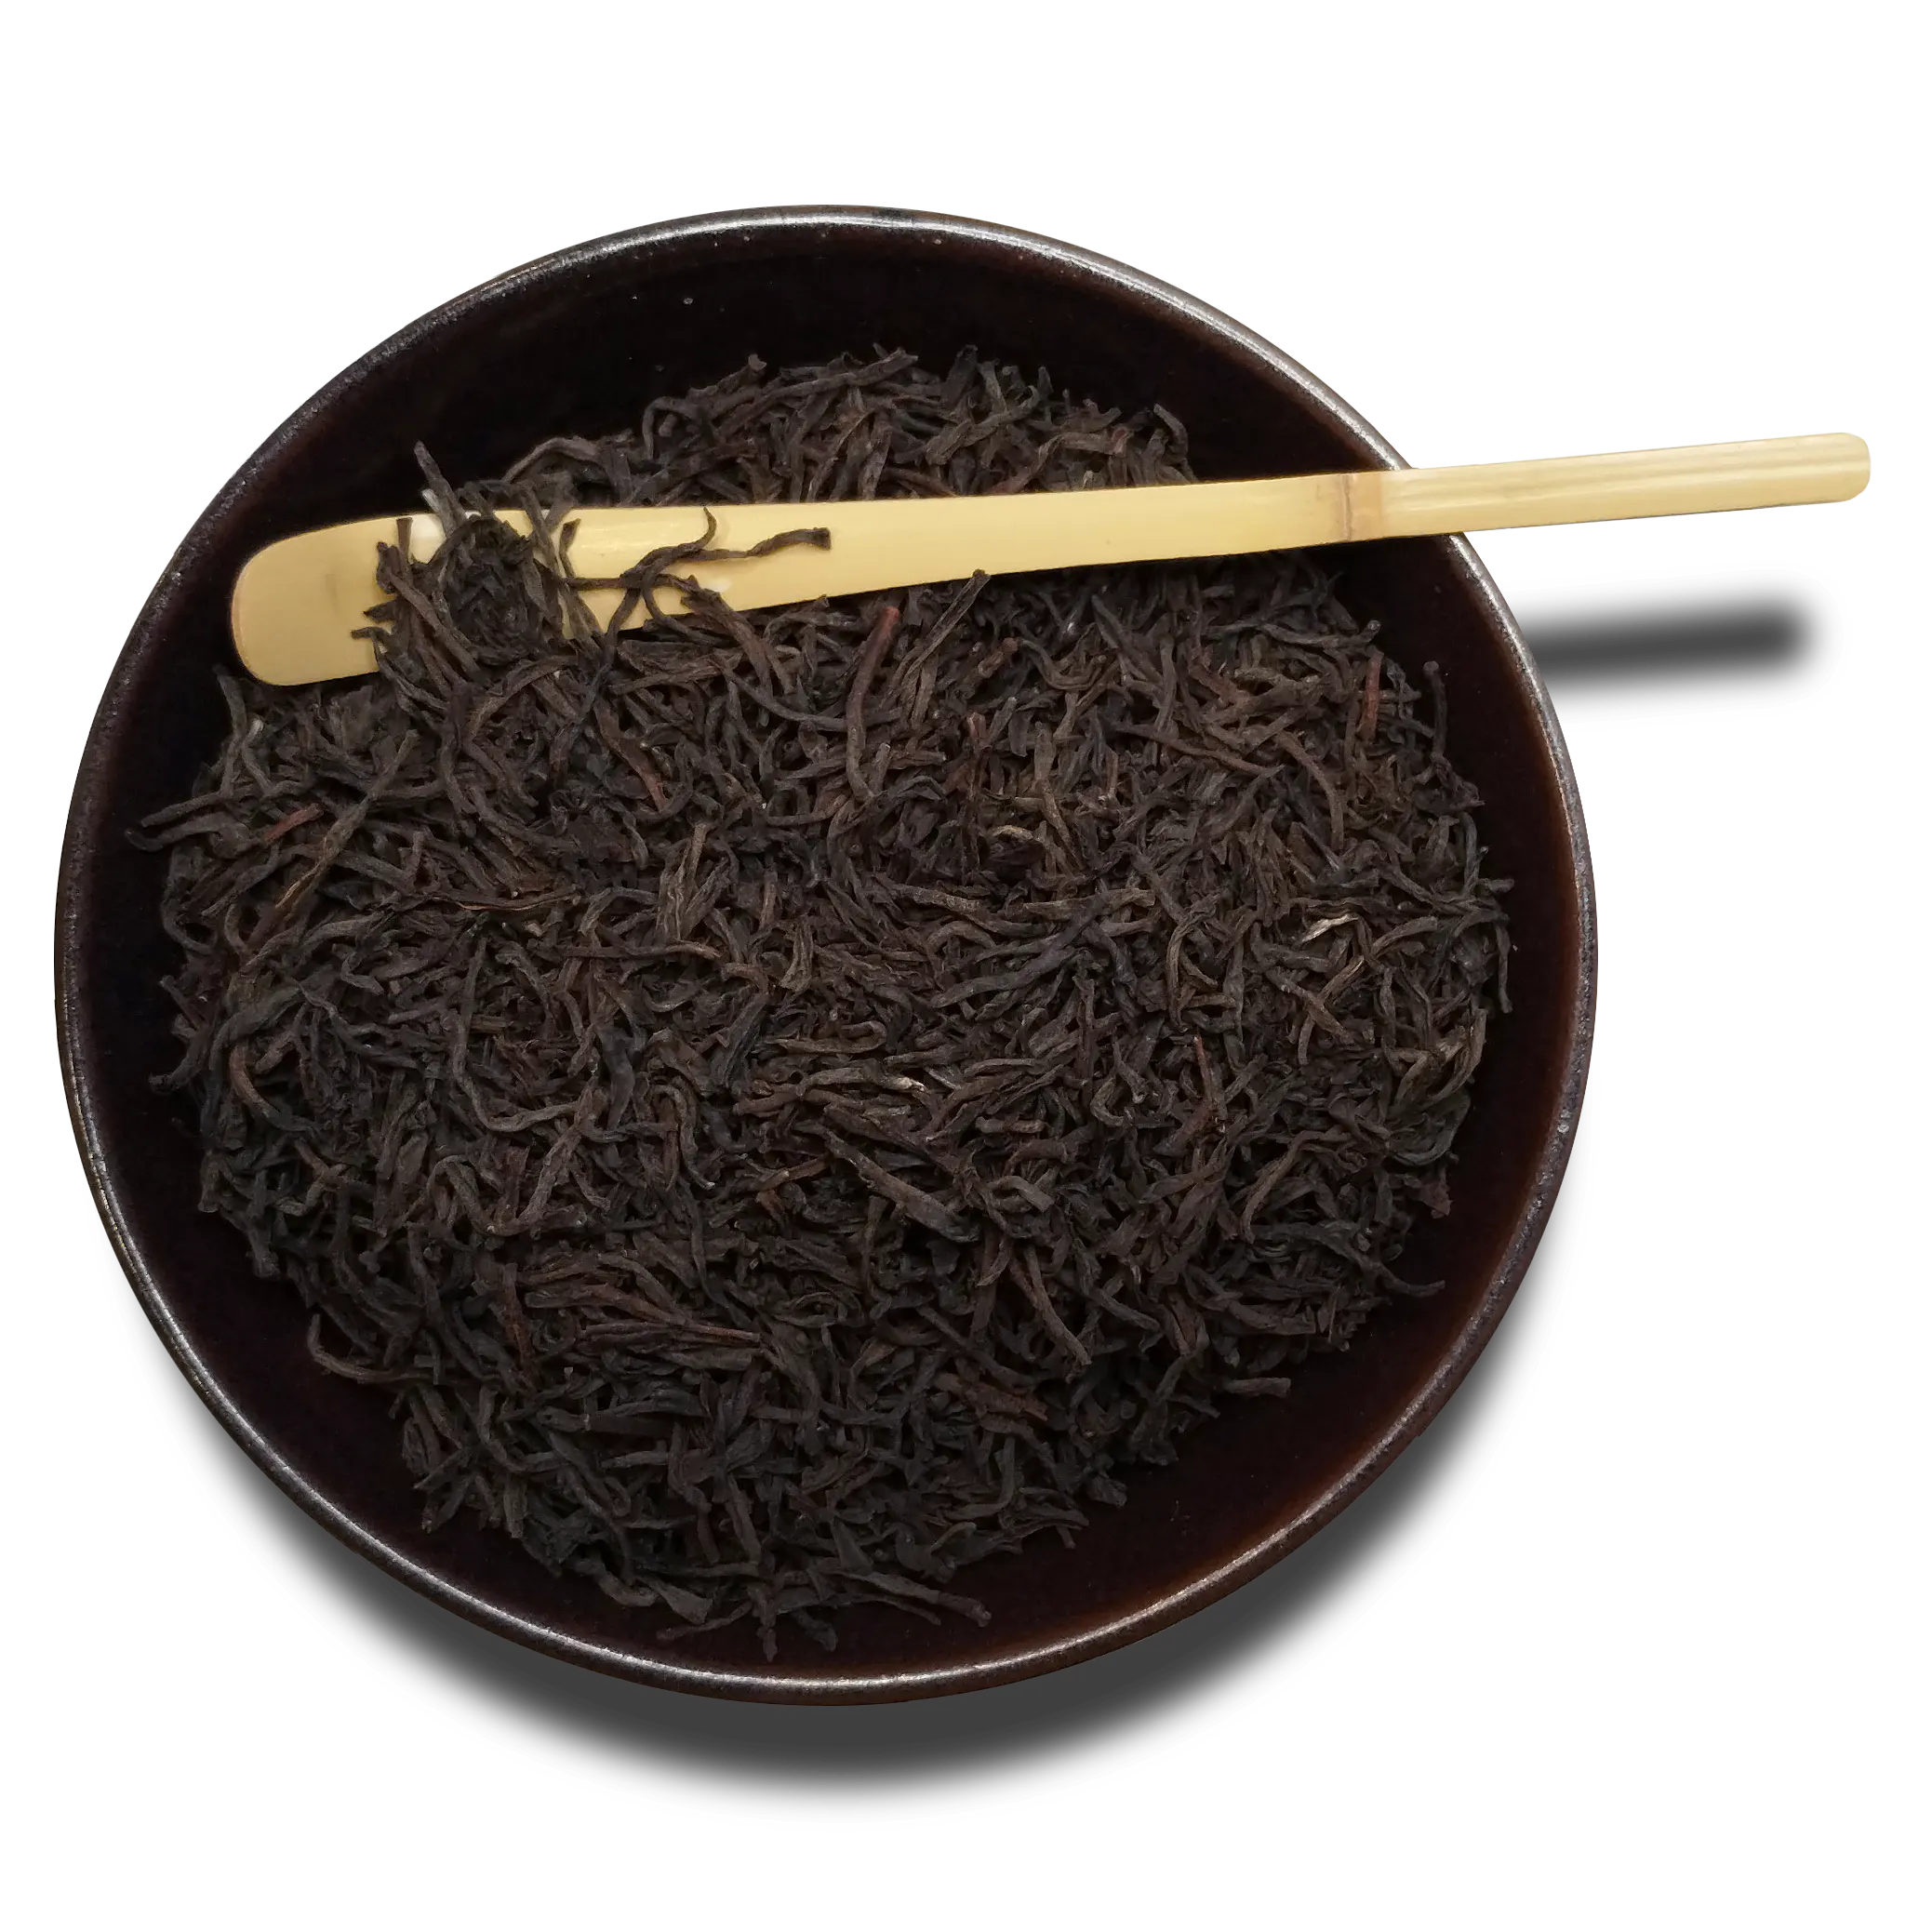 Bowl of Ceylon Black Loose Leaf Tea